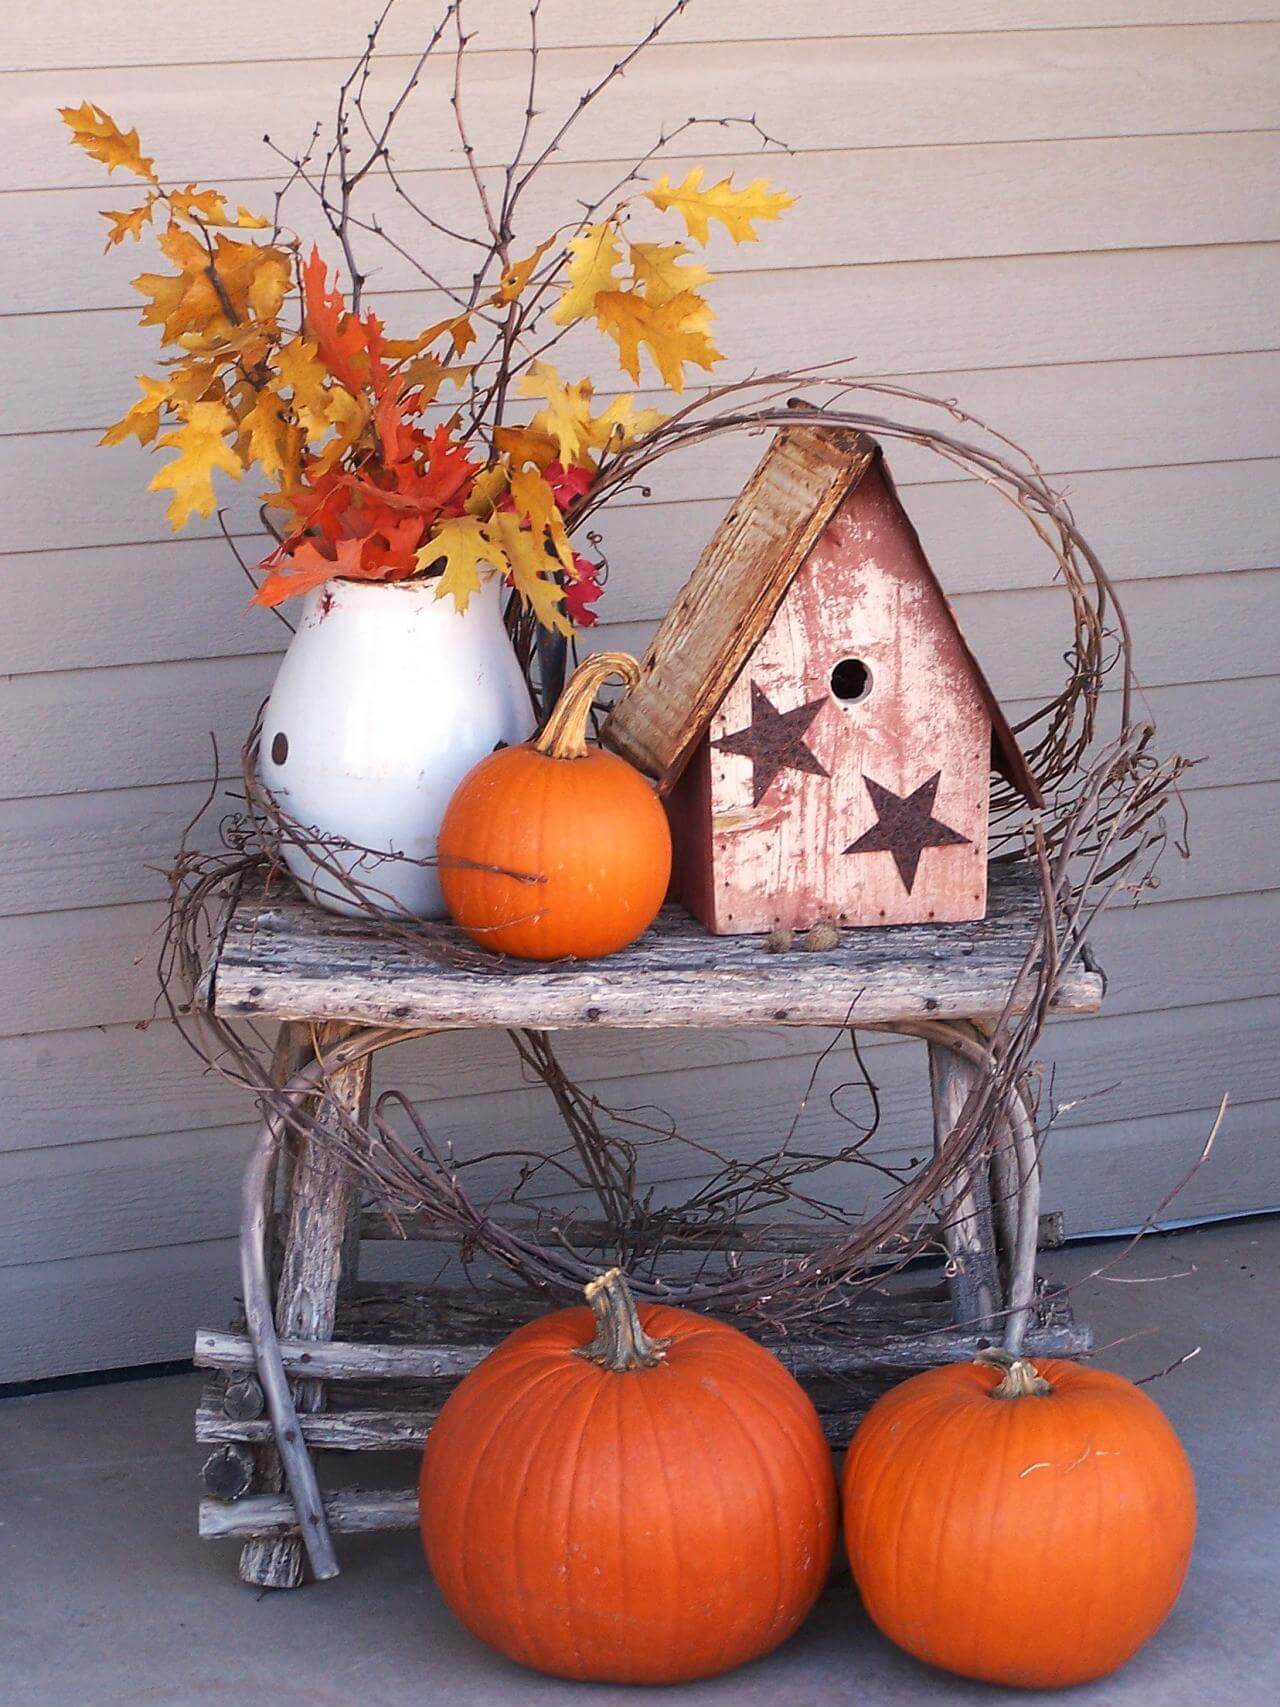 Birds Like Fall Too | Fall Porch Decoration Ideas | Porch decor on a budget